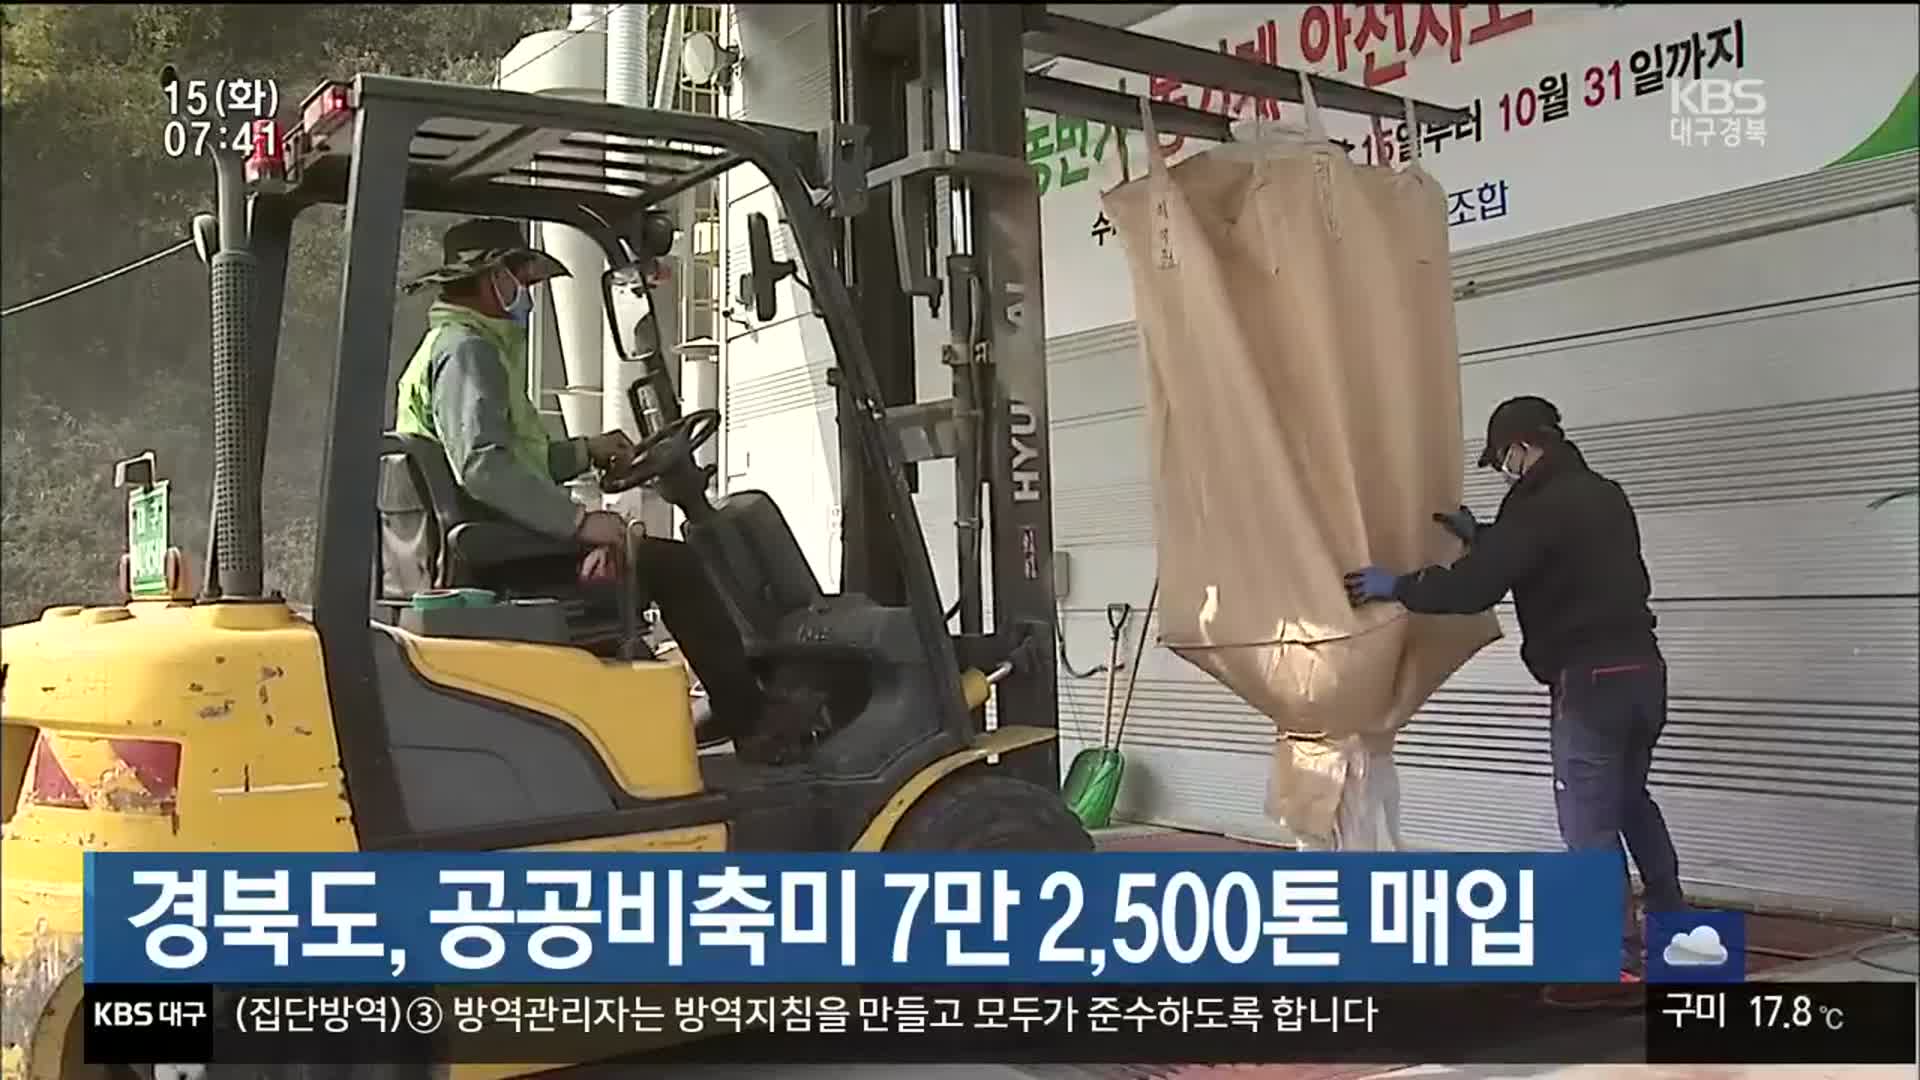 경북도, 공공비축미 7만 2,500톤 매입